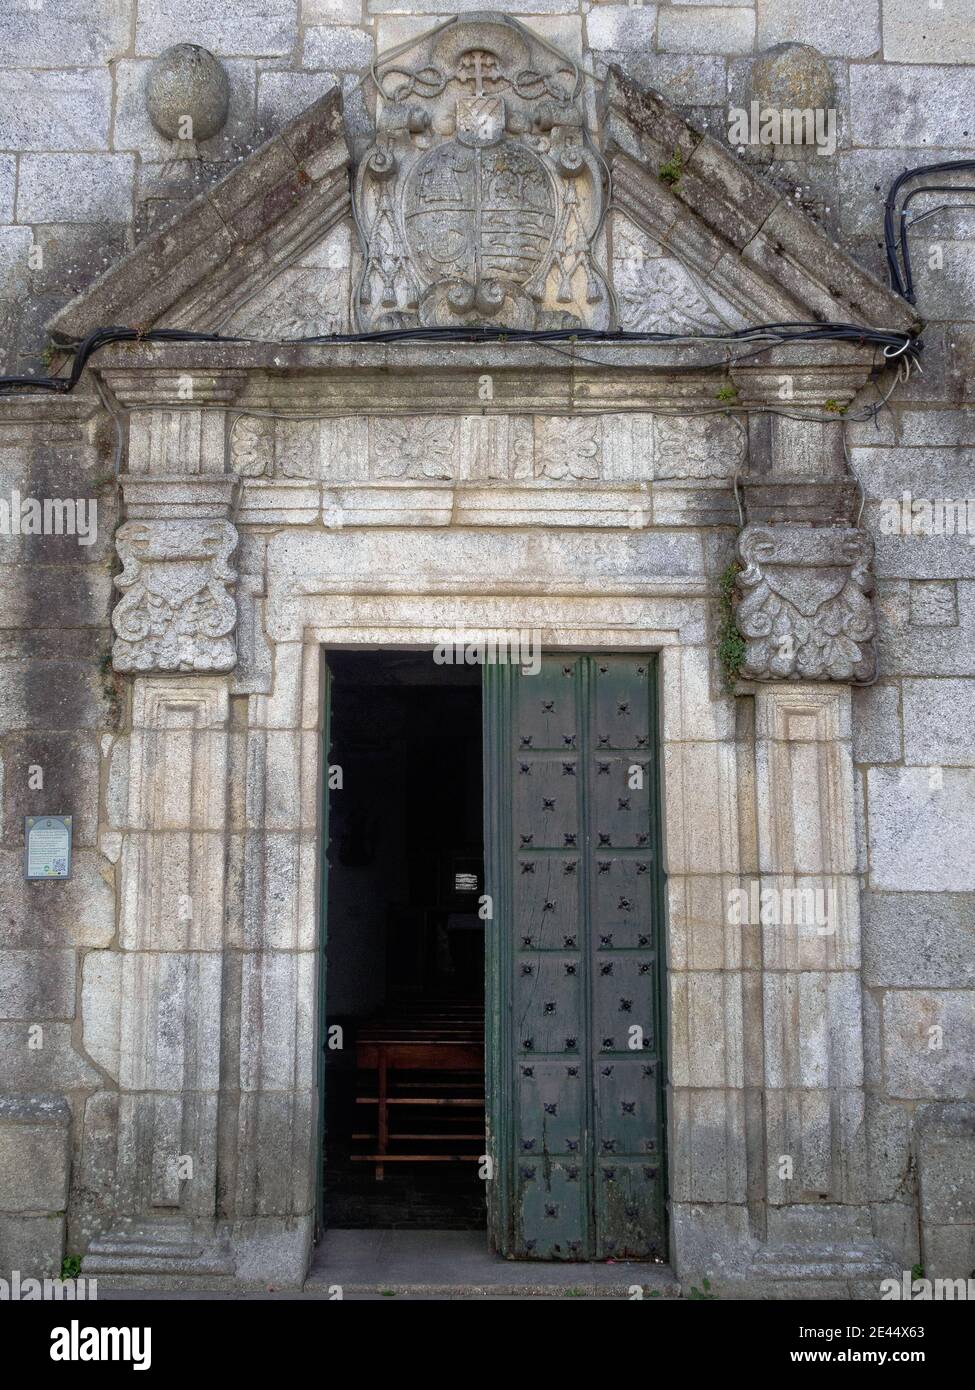 Porte de l'église Sancti Spiritus du troisième ordre franciscain - Melide, Galice, Espagne Banque D'Images